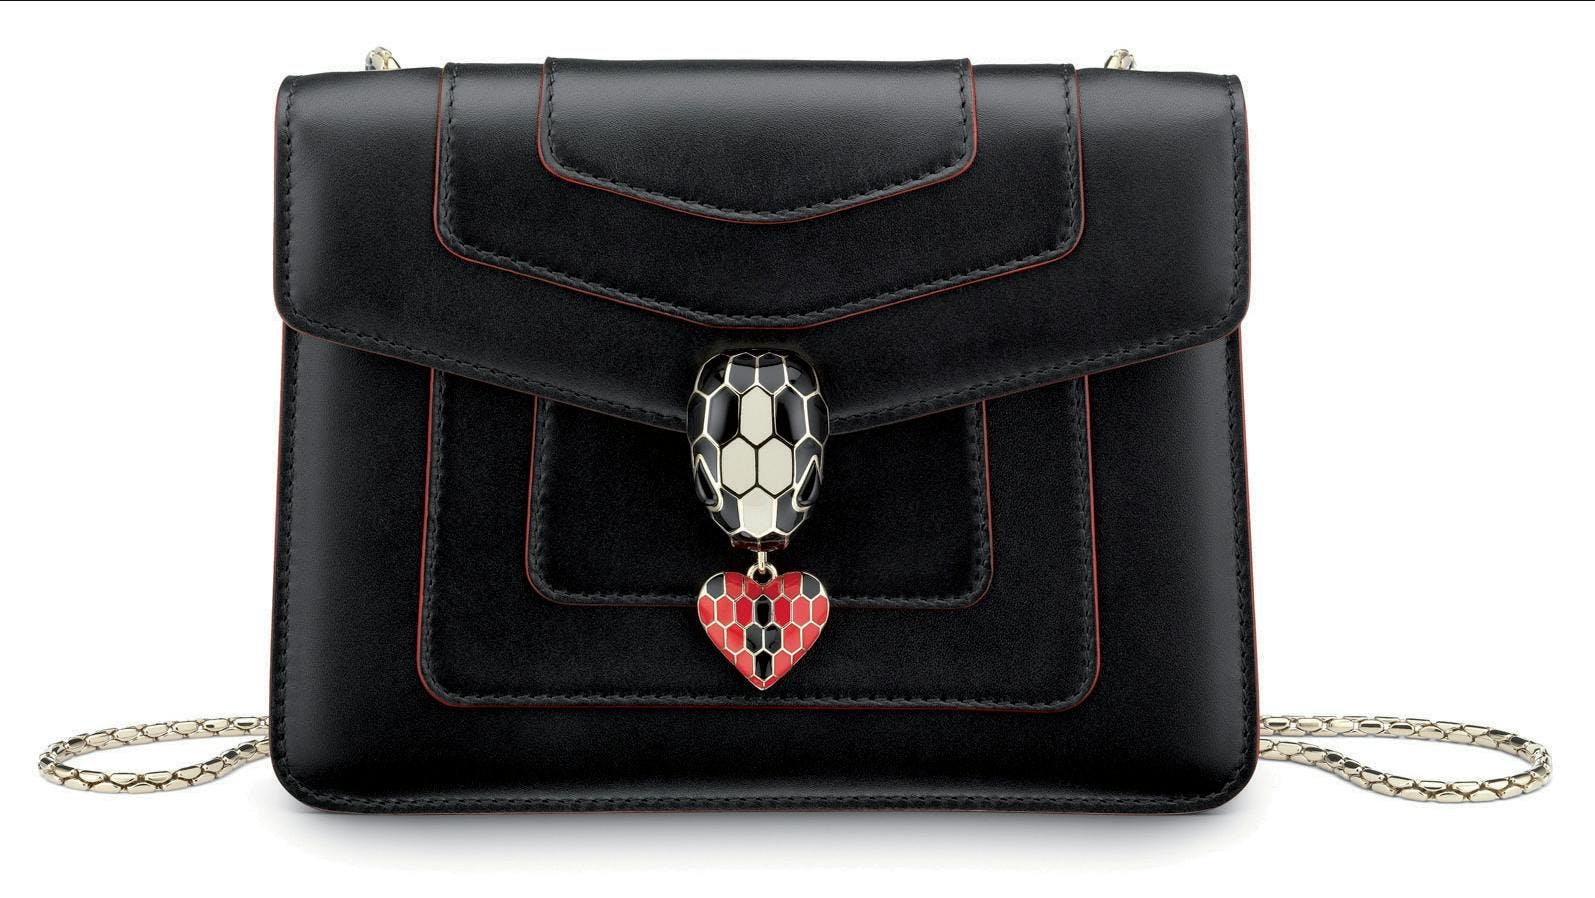 bag briefcase accessories accessory handbag